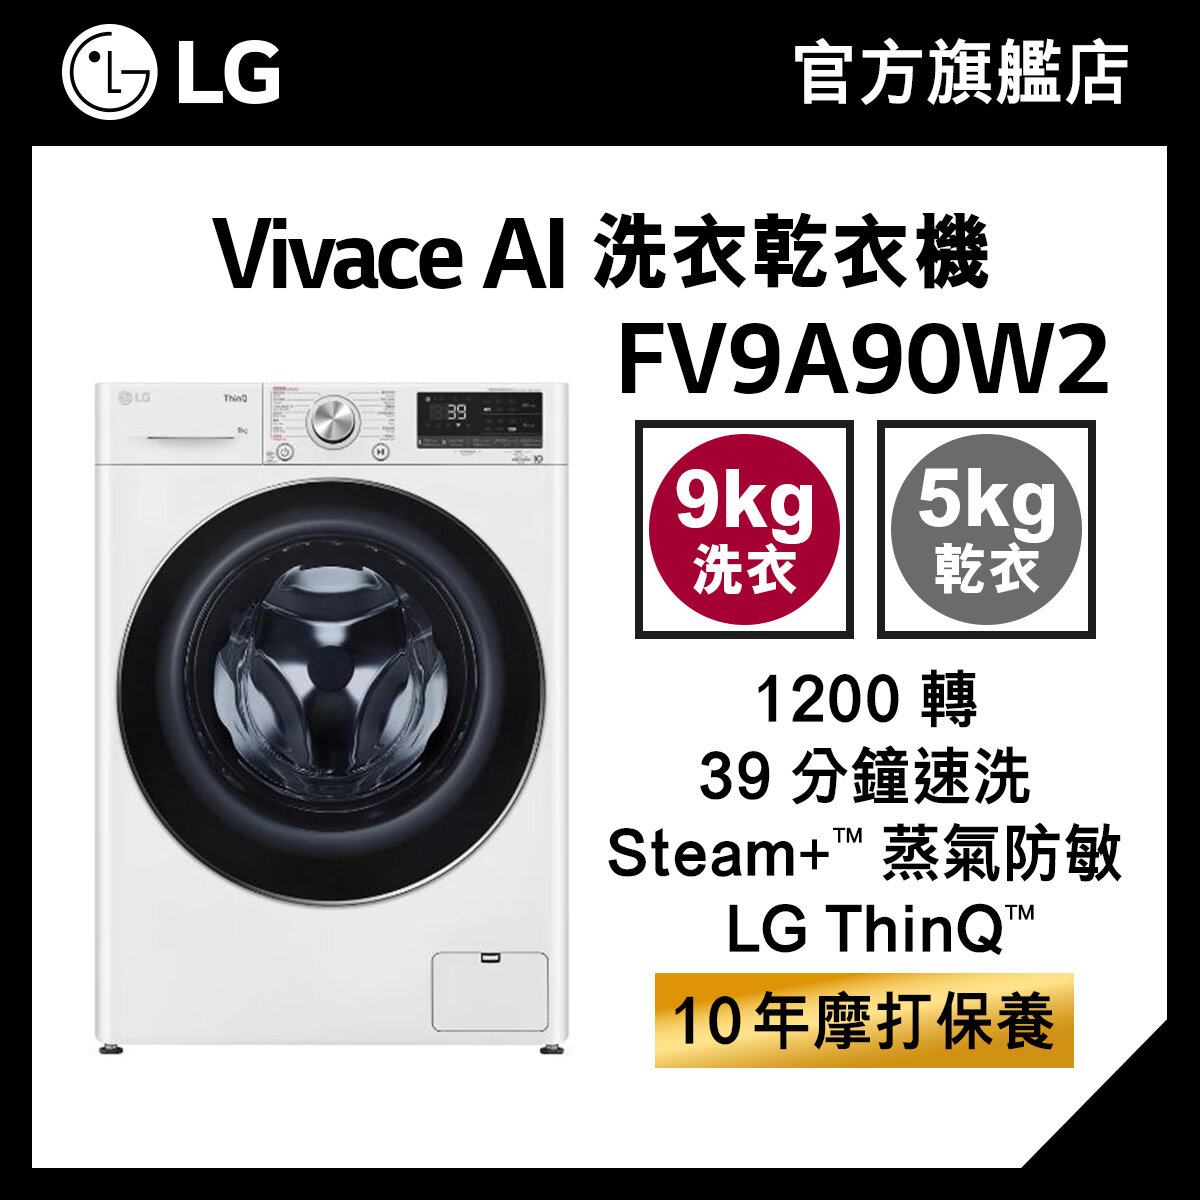 LG Vivace 9KG 1200 轉 AI 洗衣乾衣機 (蒸氣防敏, 39 分鐘速洗) FV9A90W2